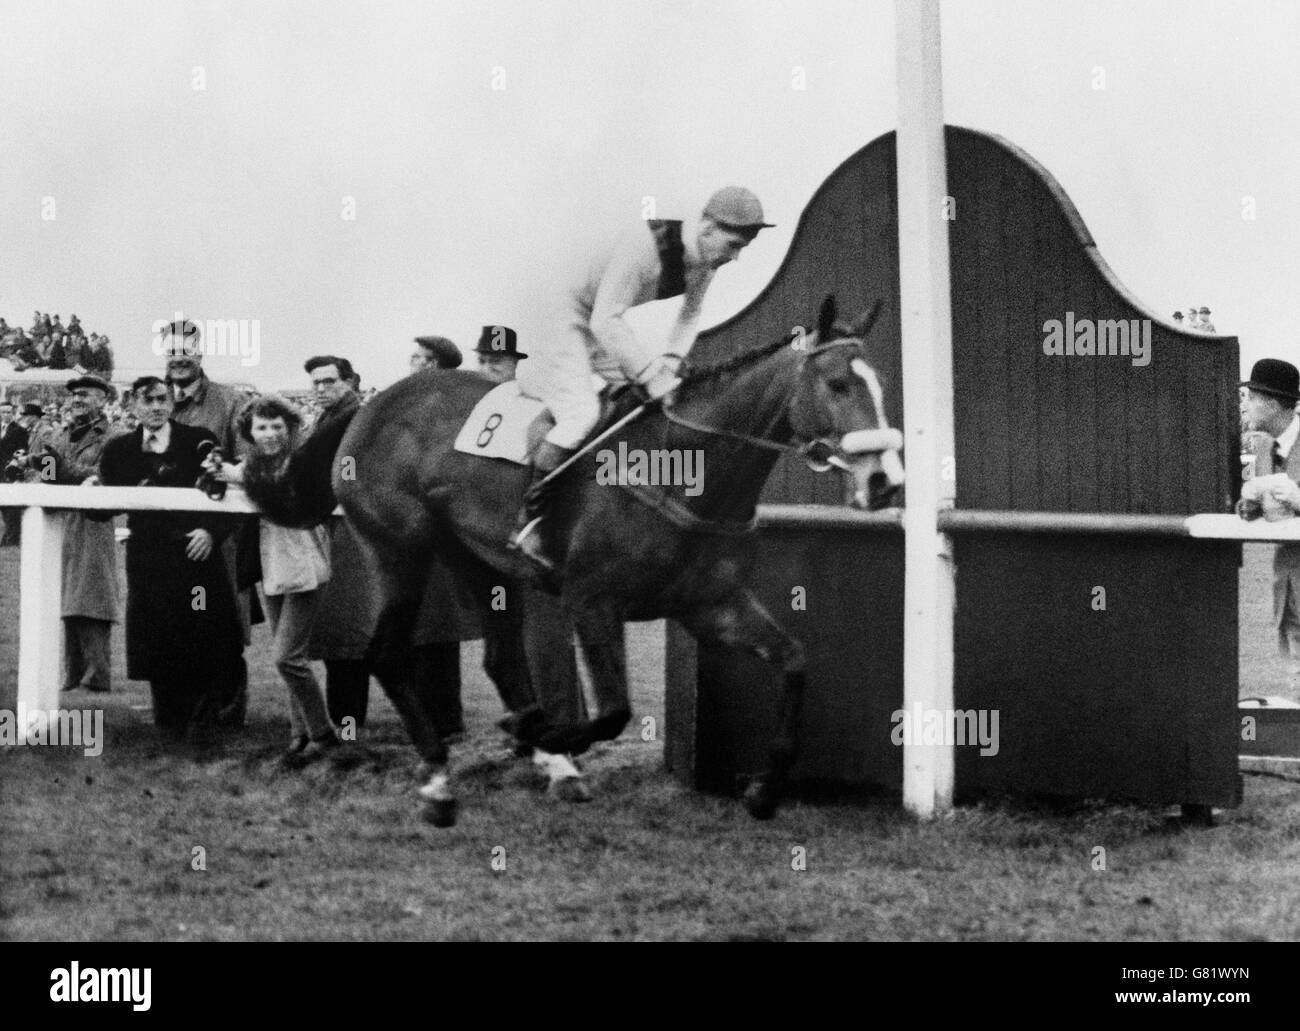 Pferderennen - 1960 Grand National - Merryman II - Aintree. Merryman II, geritten von Gerry Scott, übersteht den Posten und gewinnt die Grand National Steeplechase in Aintree, Liverpool. Stockfoto